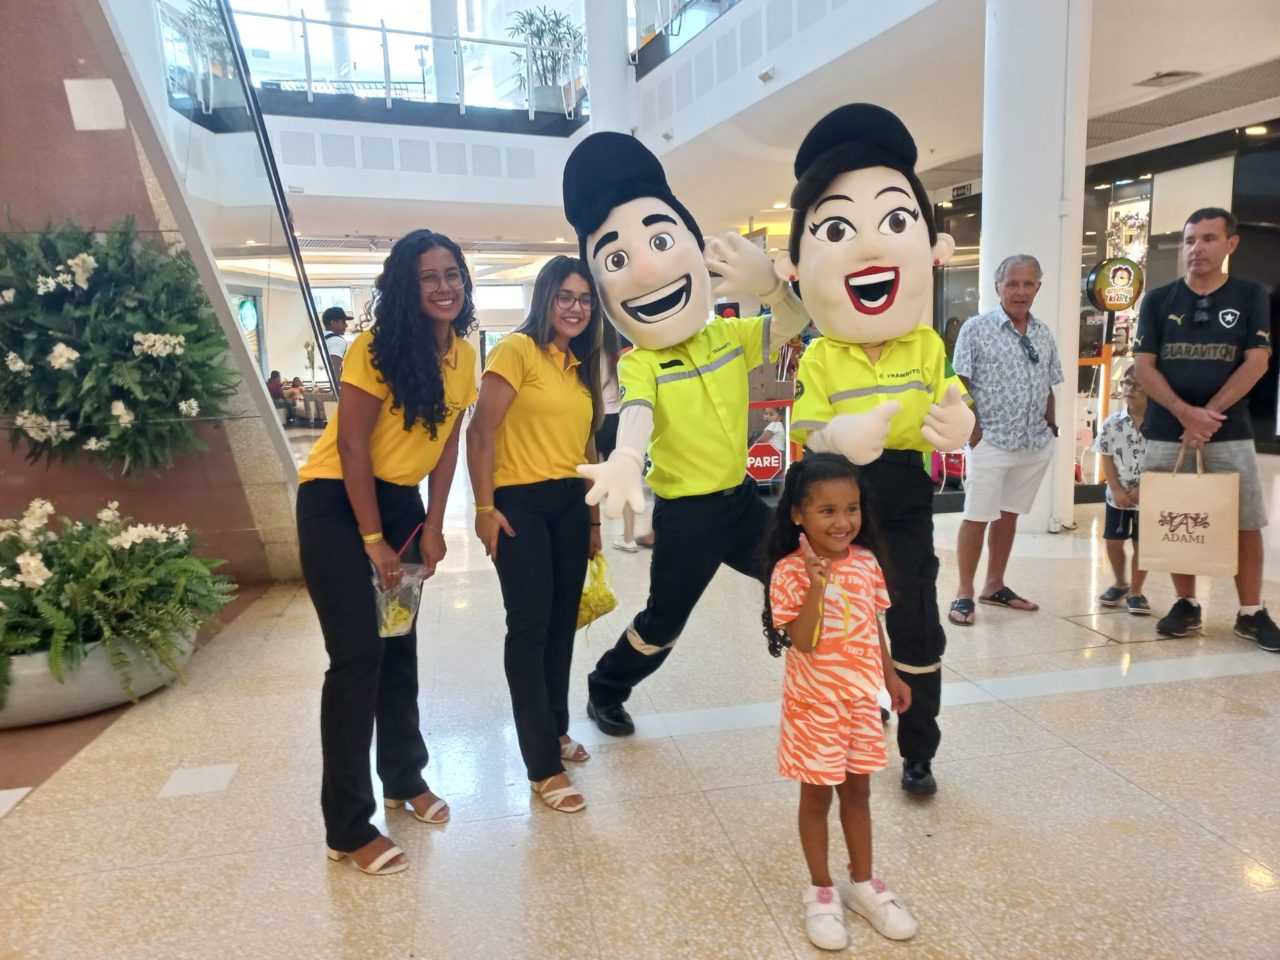 Na imagem, os bonecos mascotes de Mobilidade e Transporte, chamados Vaguinho e Julinha, estão no corredor de um shopping em Jundiaí, com uma criança, a Myrela, que está sorrindo.